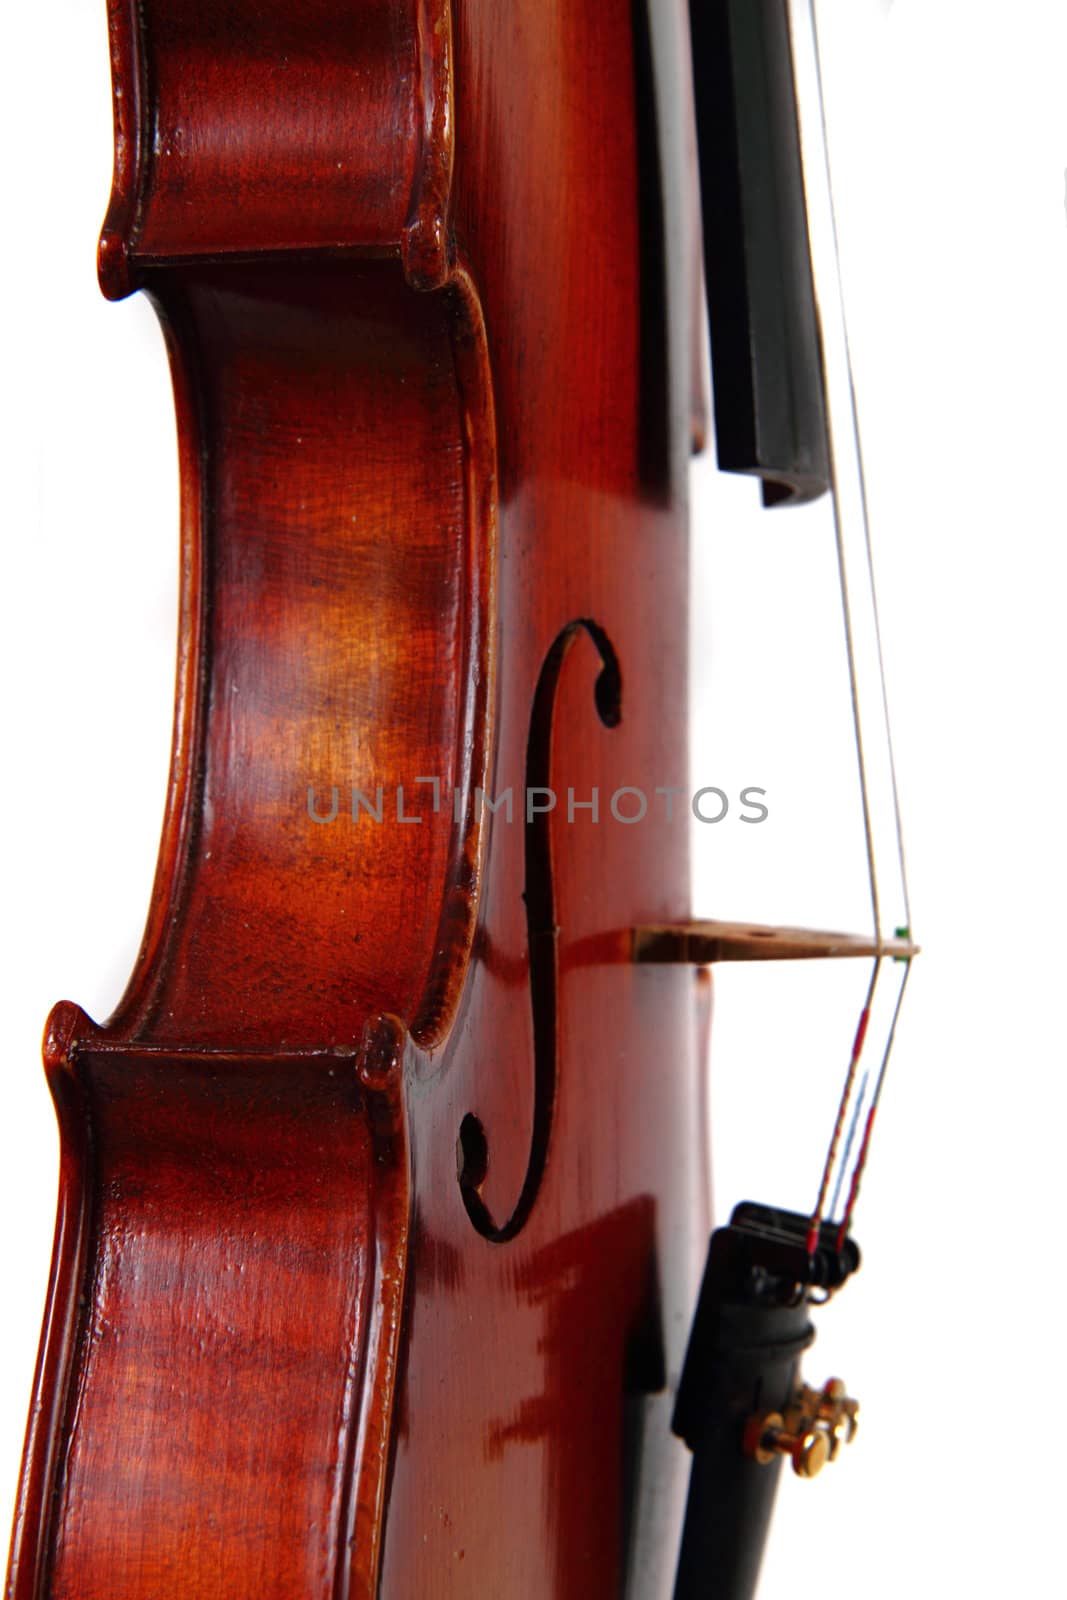 violin details by jonnysek